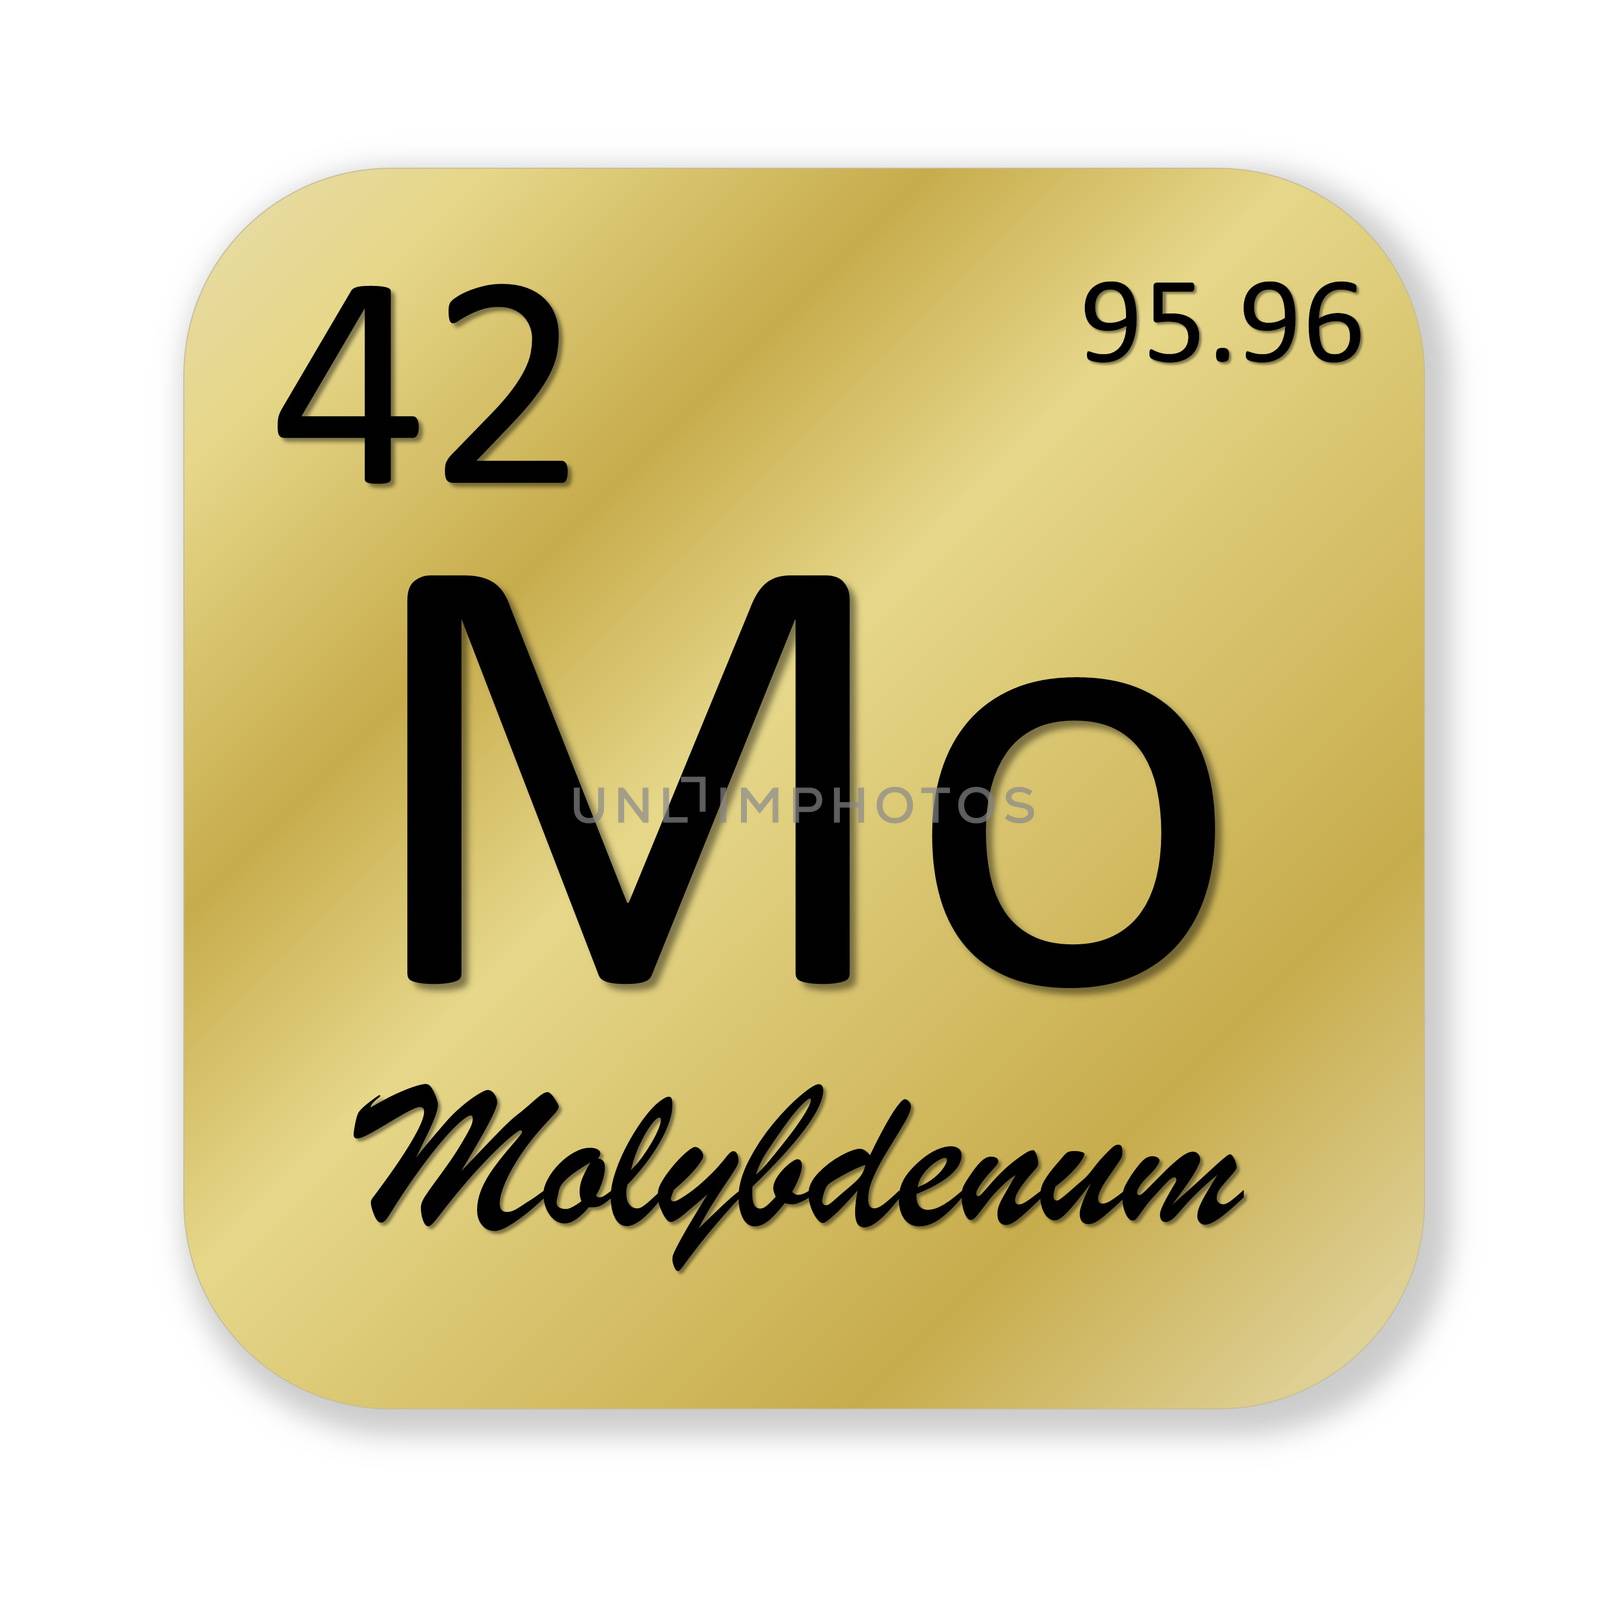 Molybdenum element by Elenaphotos21